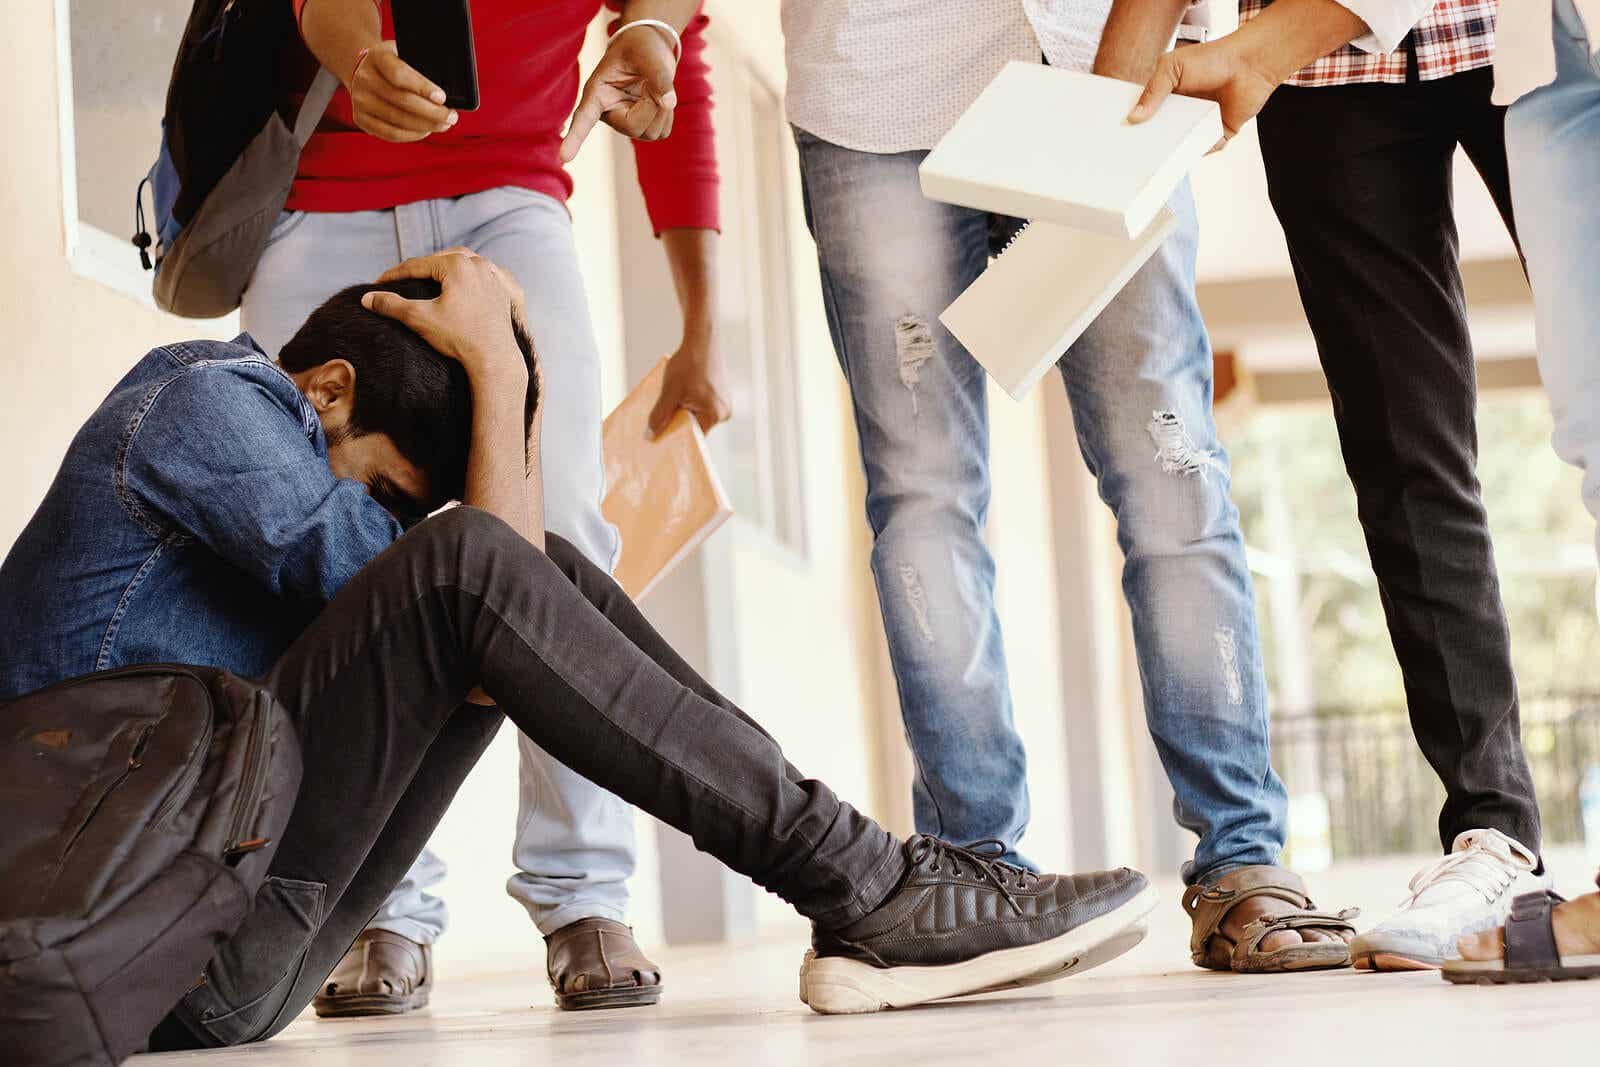 Een tienerjongen die op school op de grond zit, omringd door een groep pestkoppen.